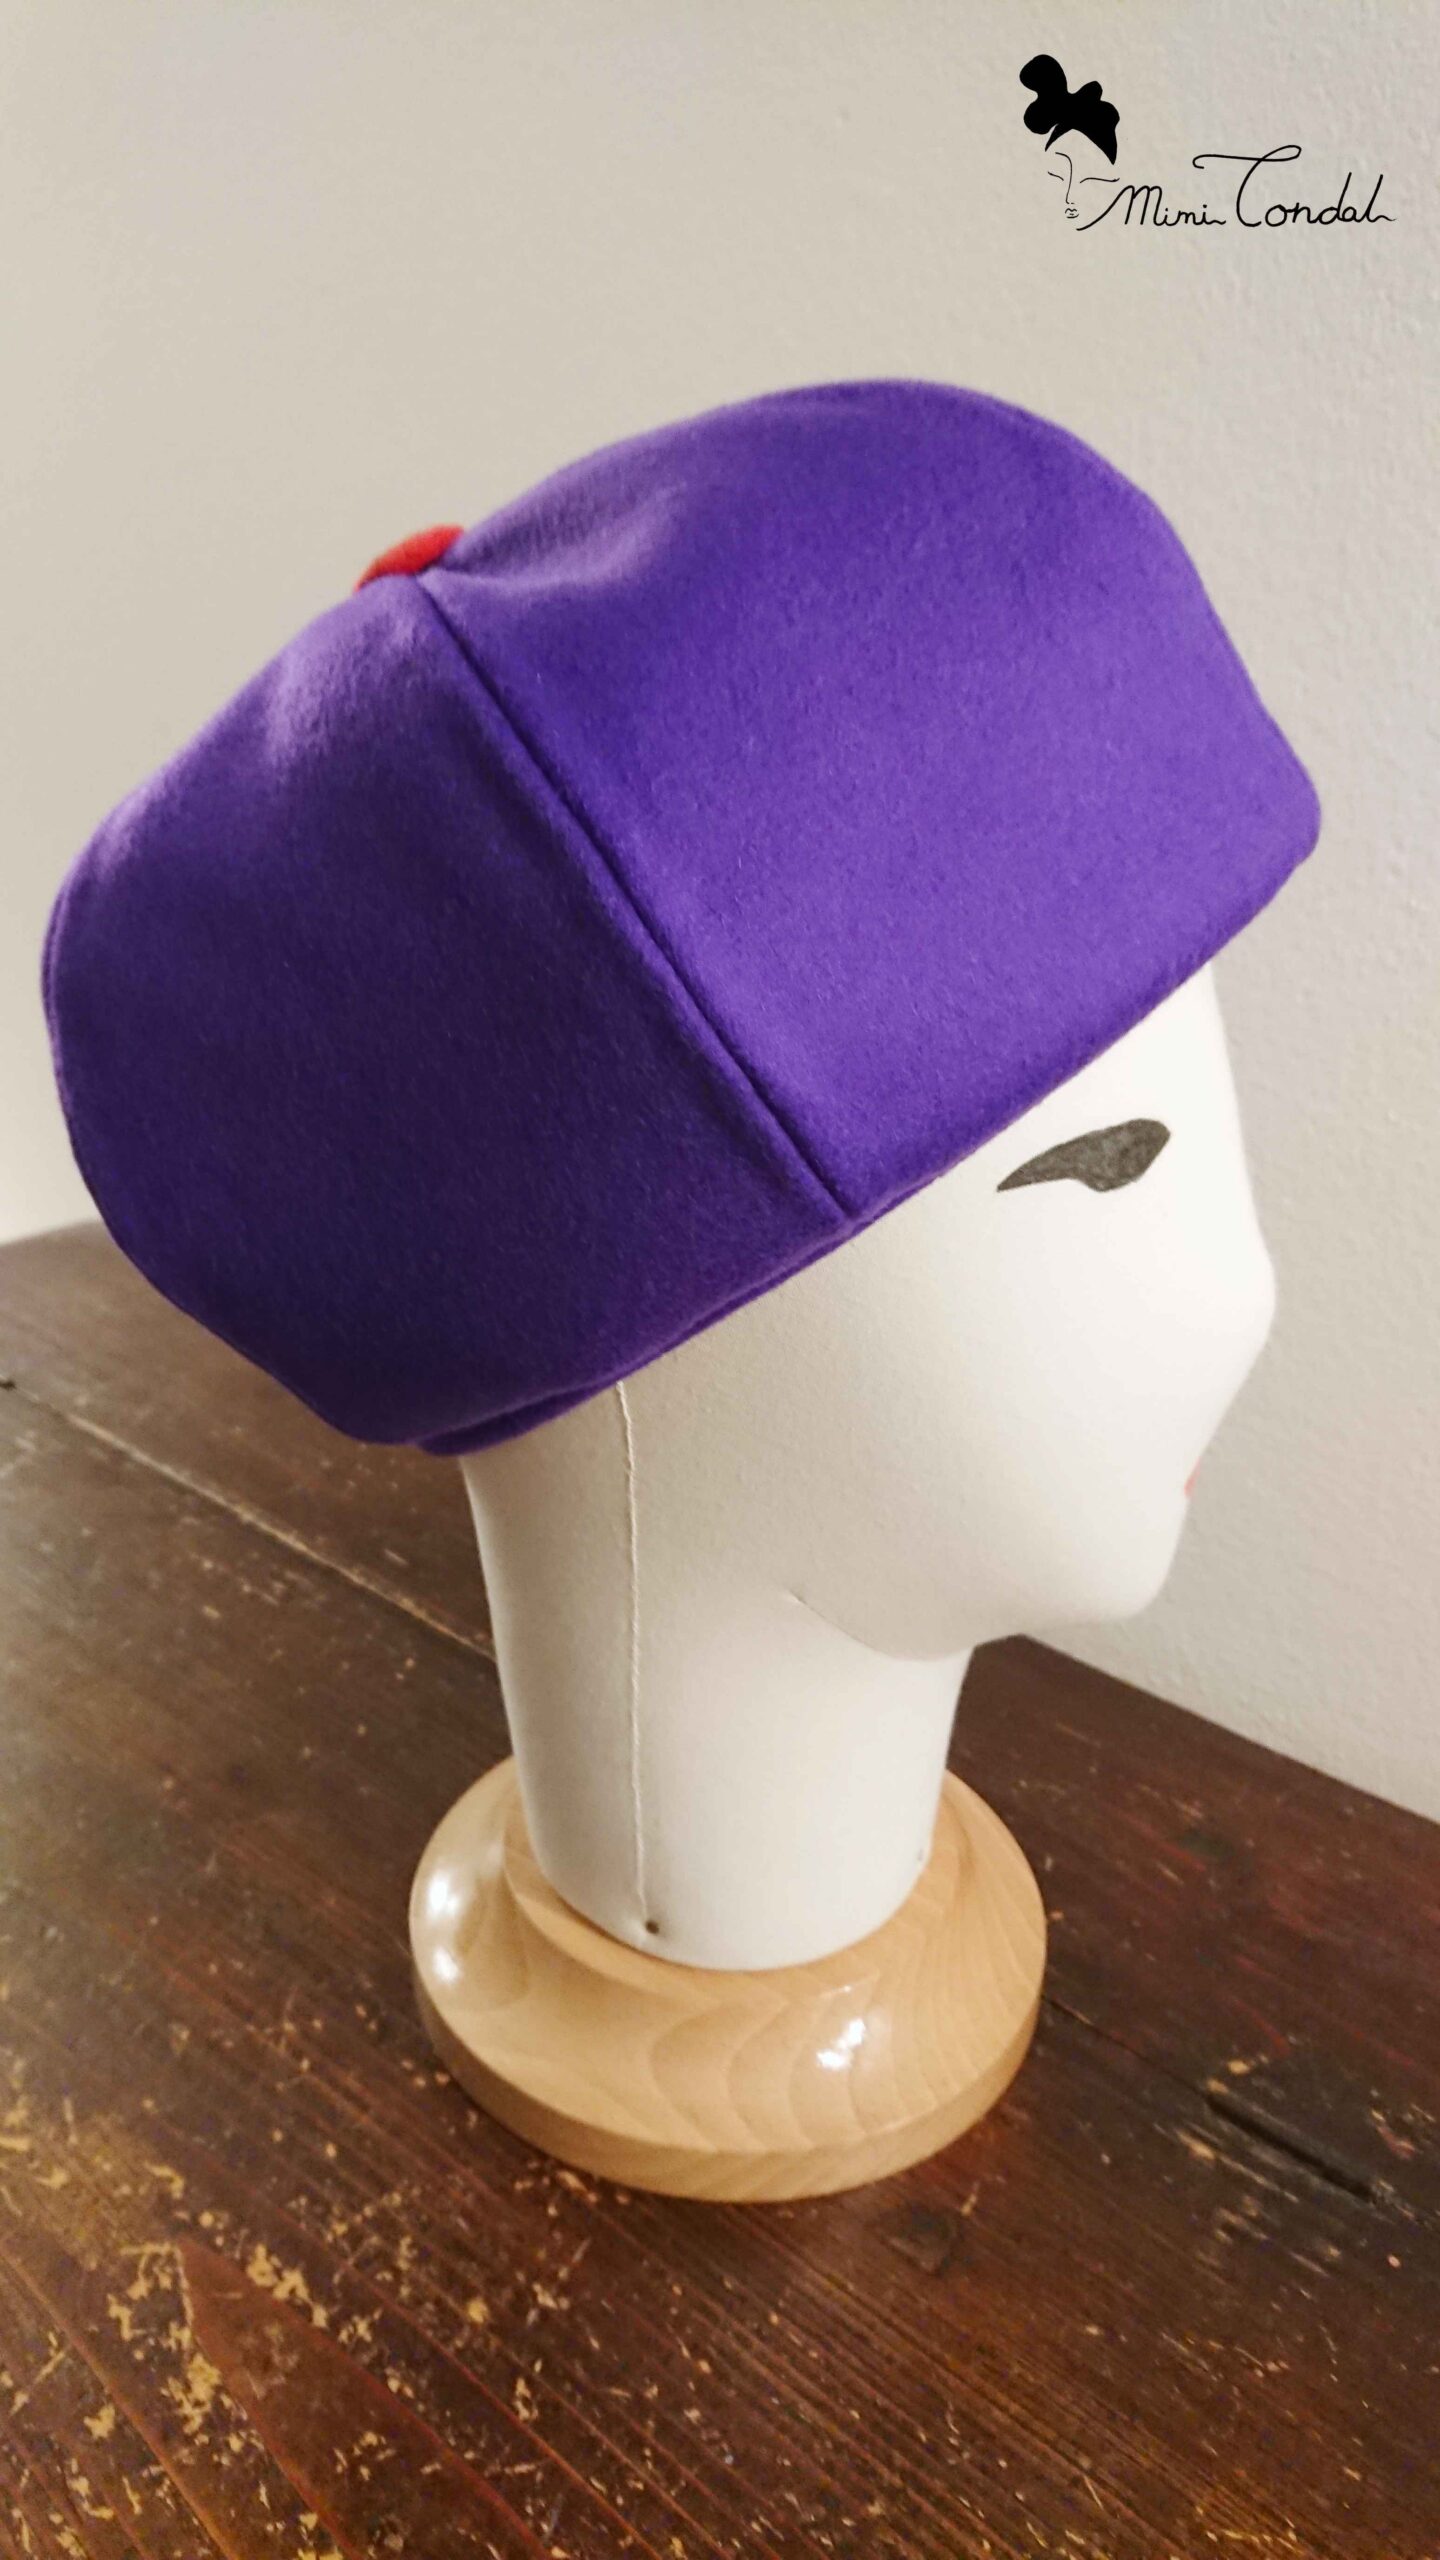 Berretto lana viola a spicchi molto bombato, stile cappello irlandese, Mimi Condal